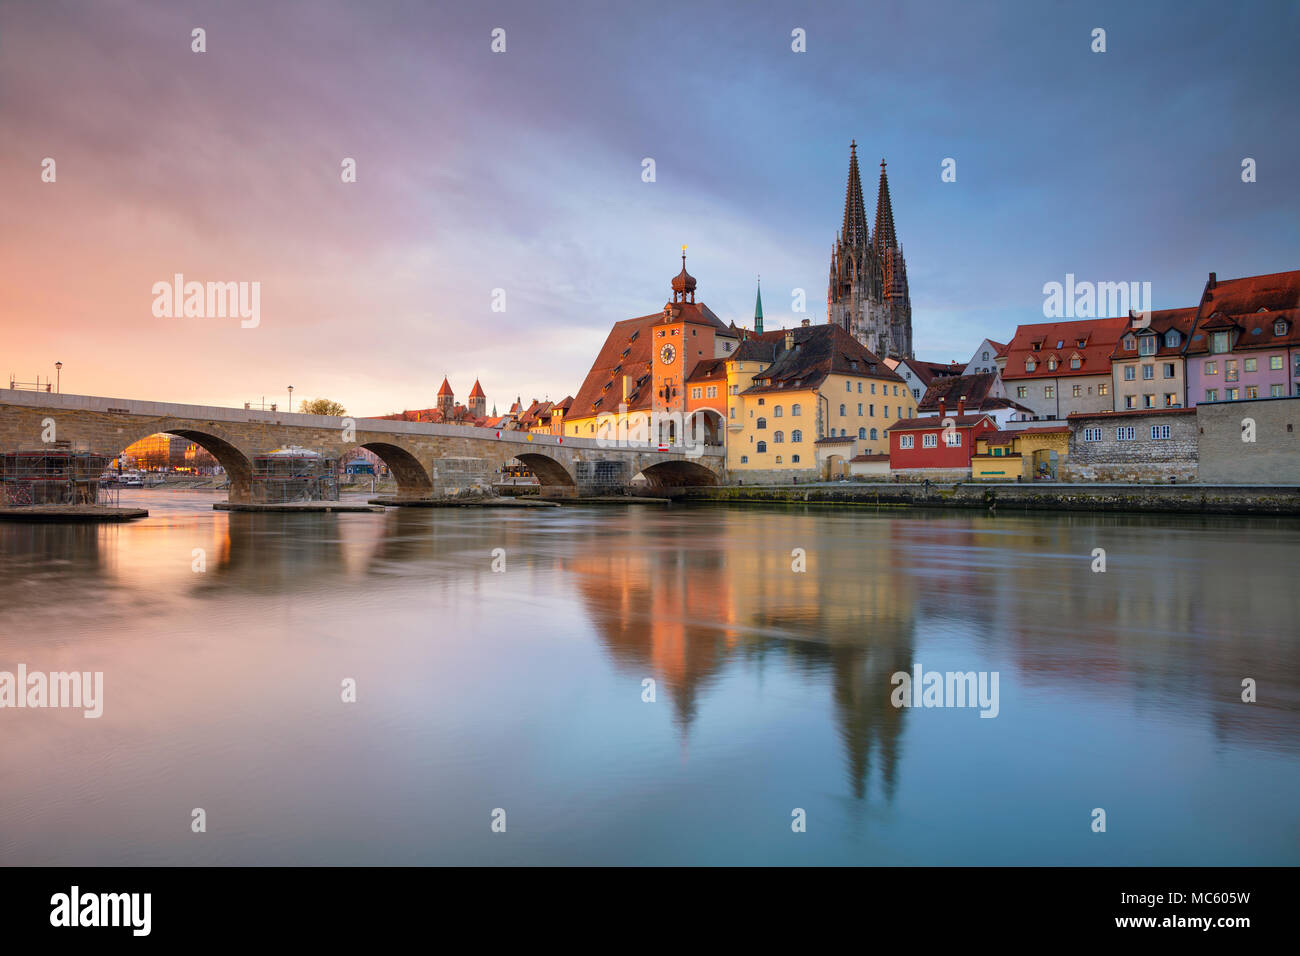 Regensburg. Stadtbild Bild von Regensburg, Deutschland im Frühling Sonnenaufgang. Stockfoto